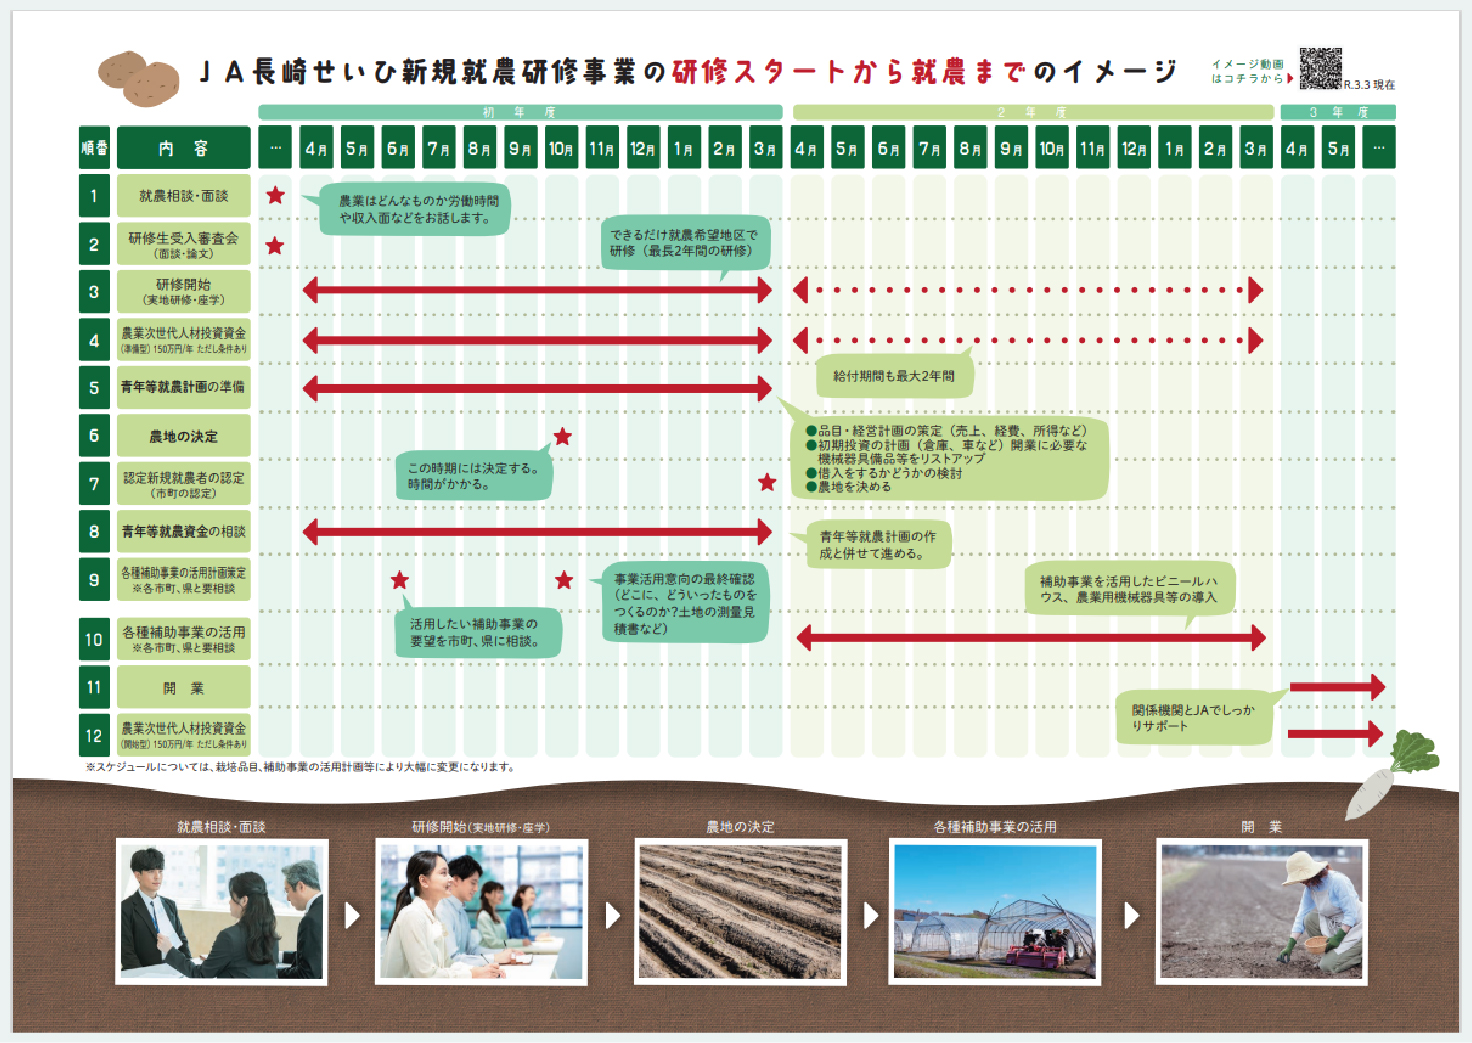 JA長崎せいひ新規就農研修事業の研修スタートから就農までのイメージ